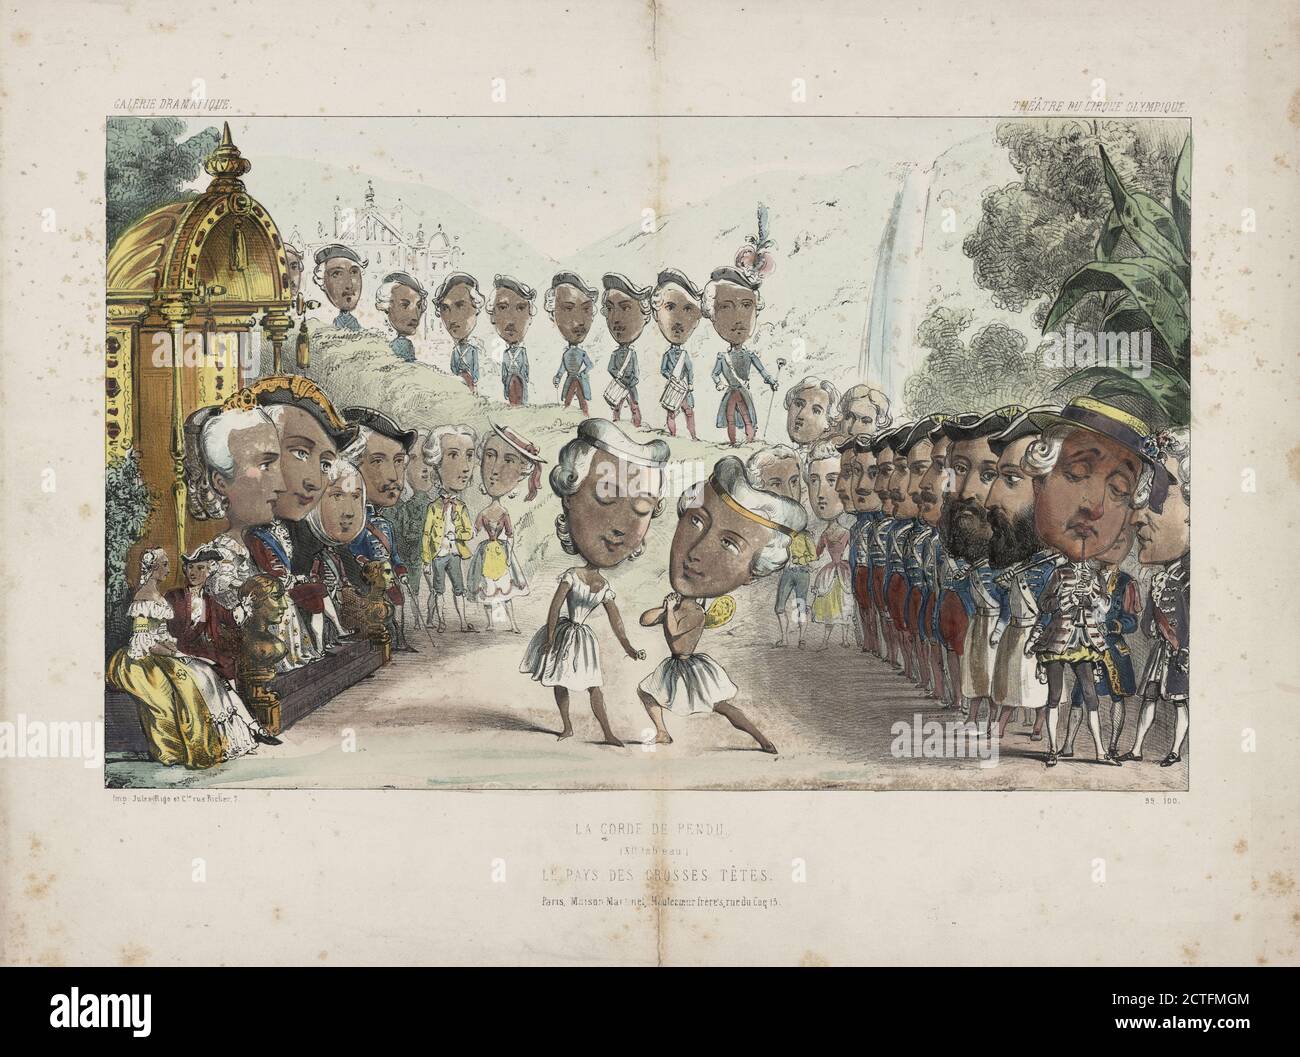 La corde de pendu. (XII tableau). Le pays des grosses têtes, still image, Prints, 1844 Stock Photo